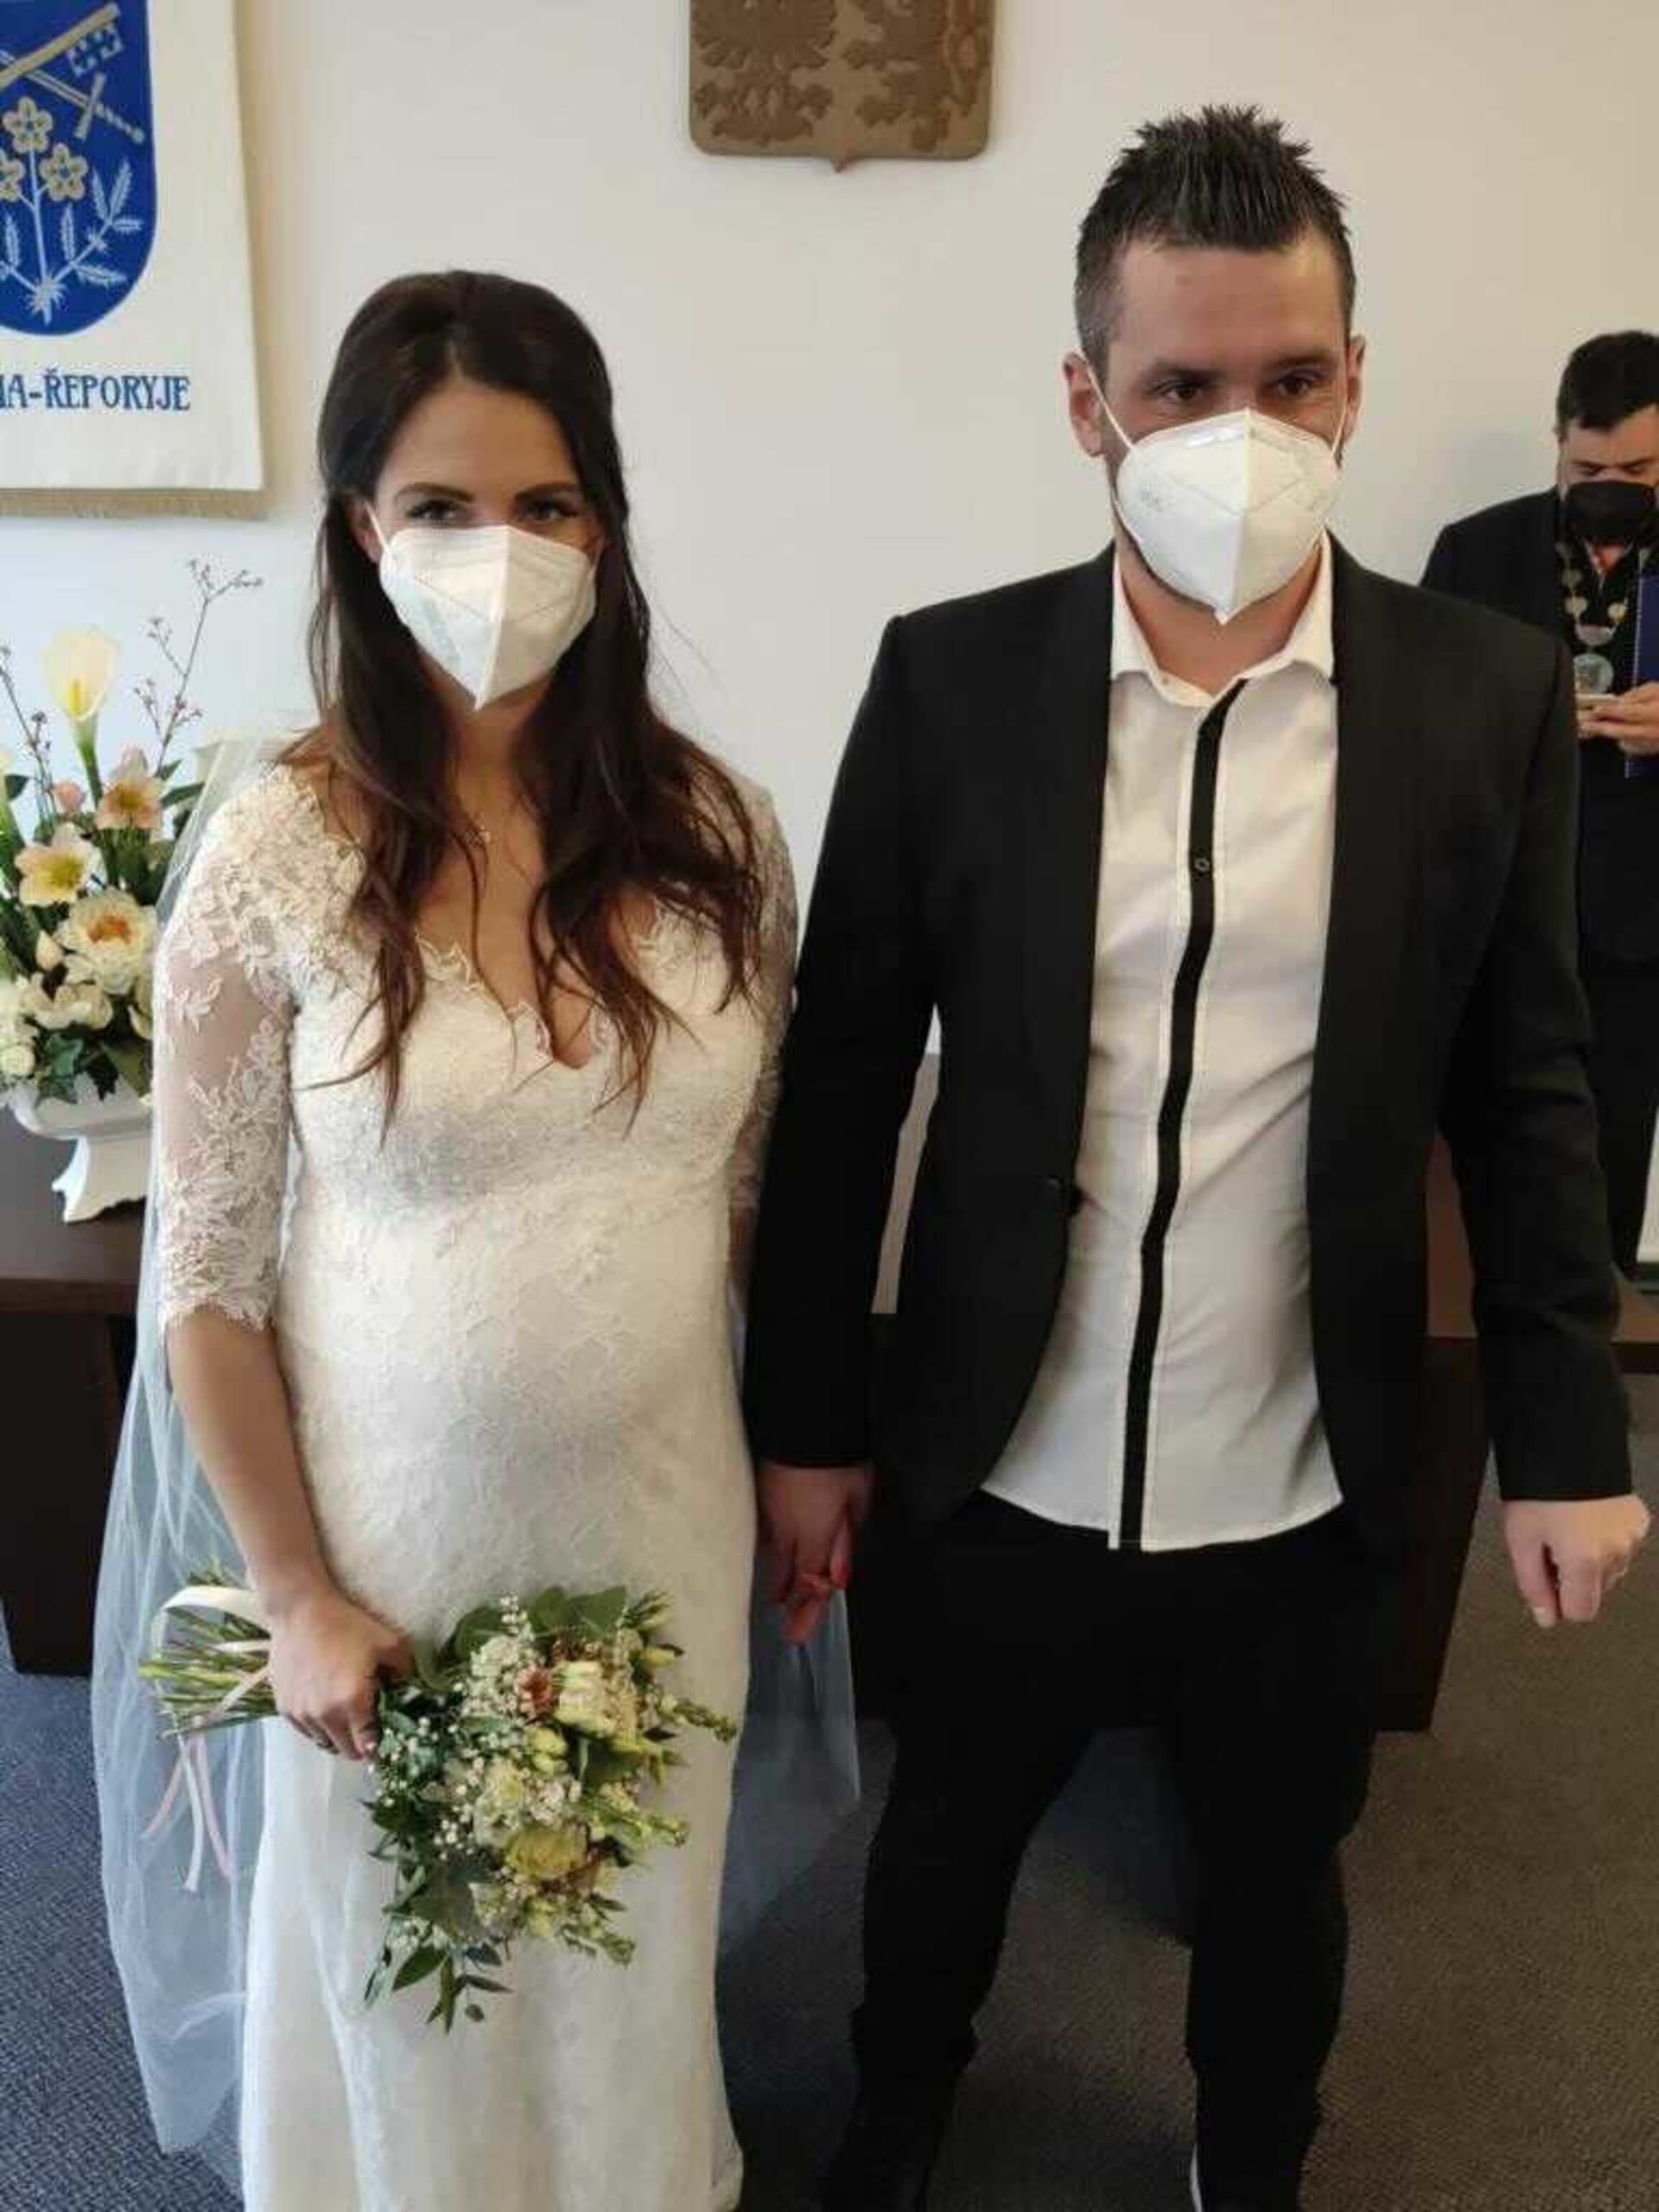 Svatba se konala na úřadě v Řeporyjích.